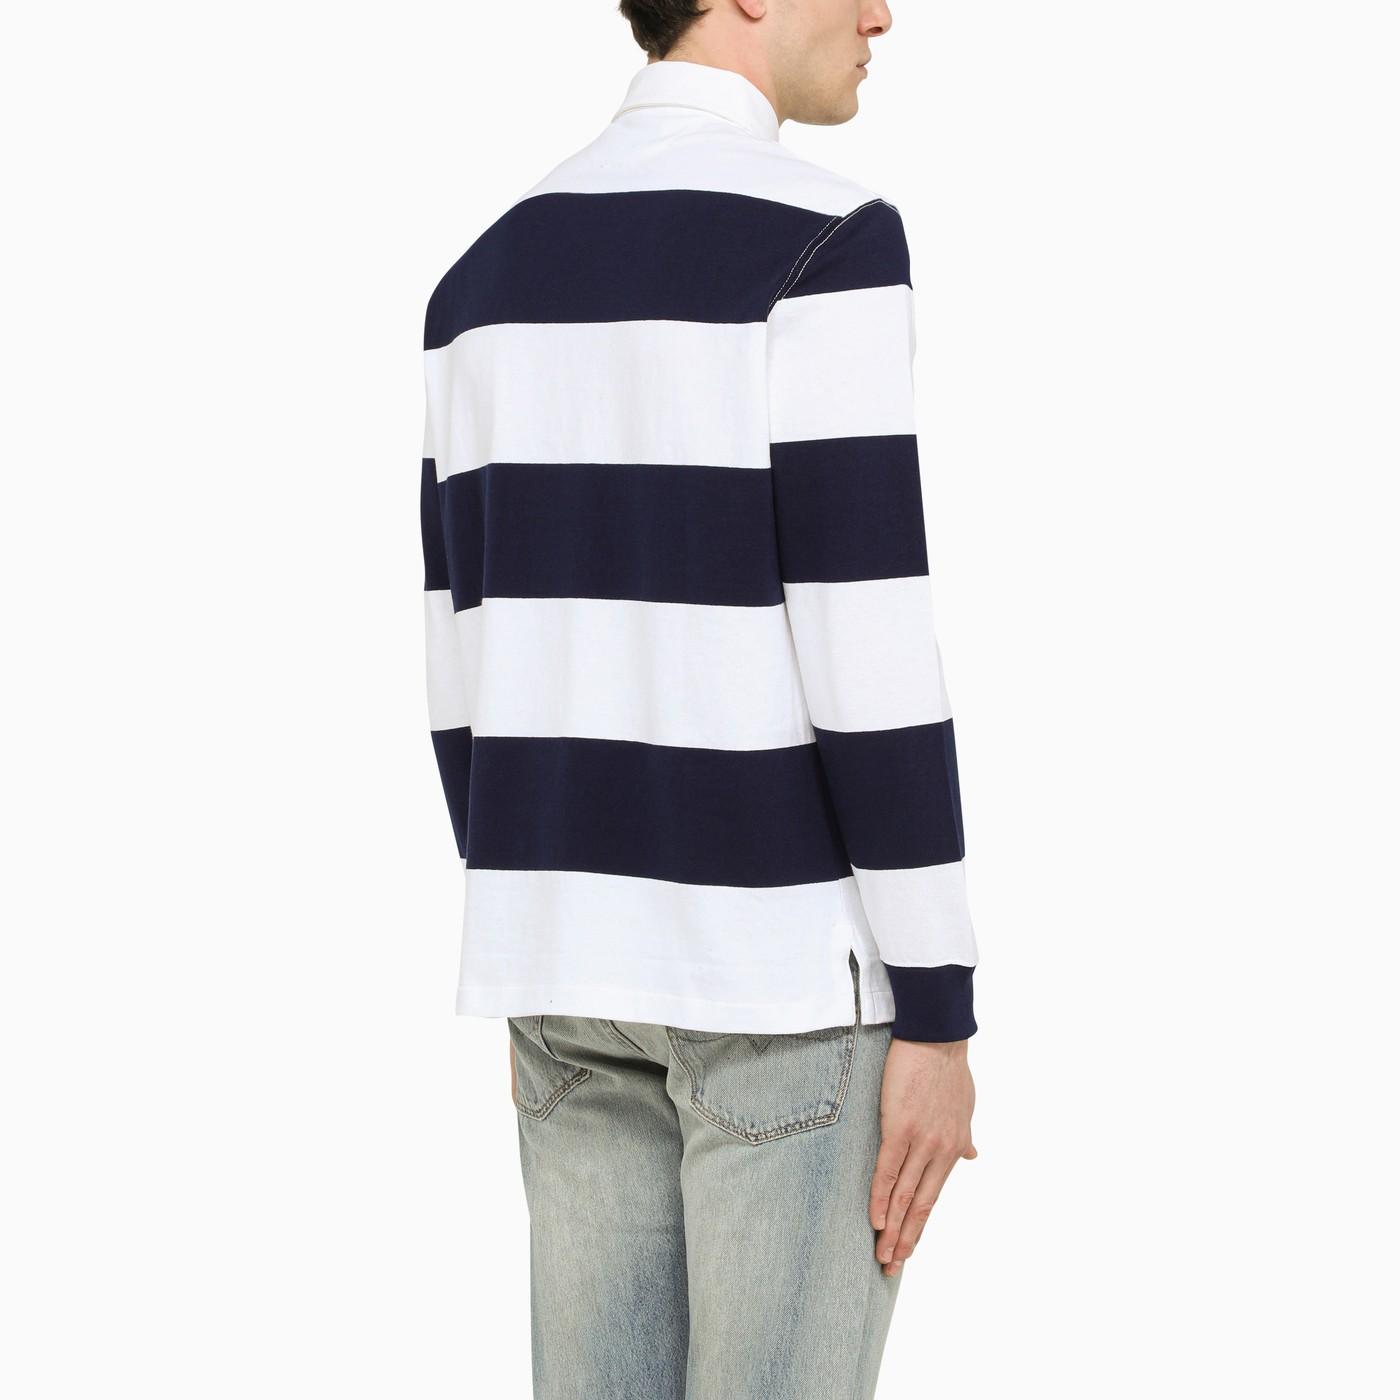 Louis Vuitton Black Cotton Pique Long Sleeve Polo T-Shirt L